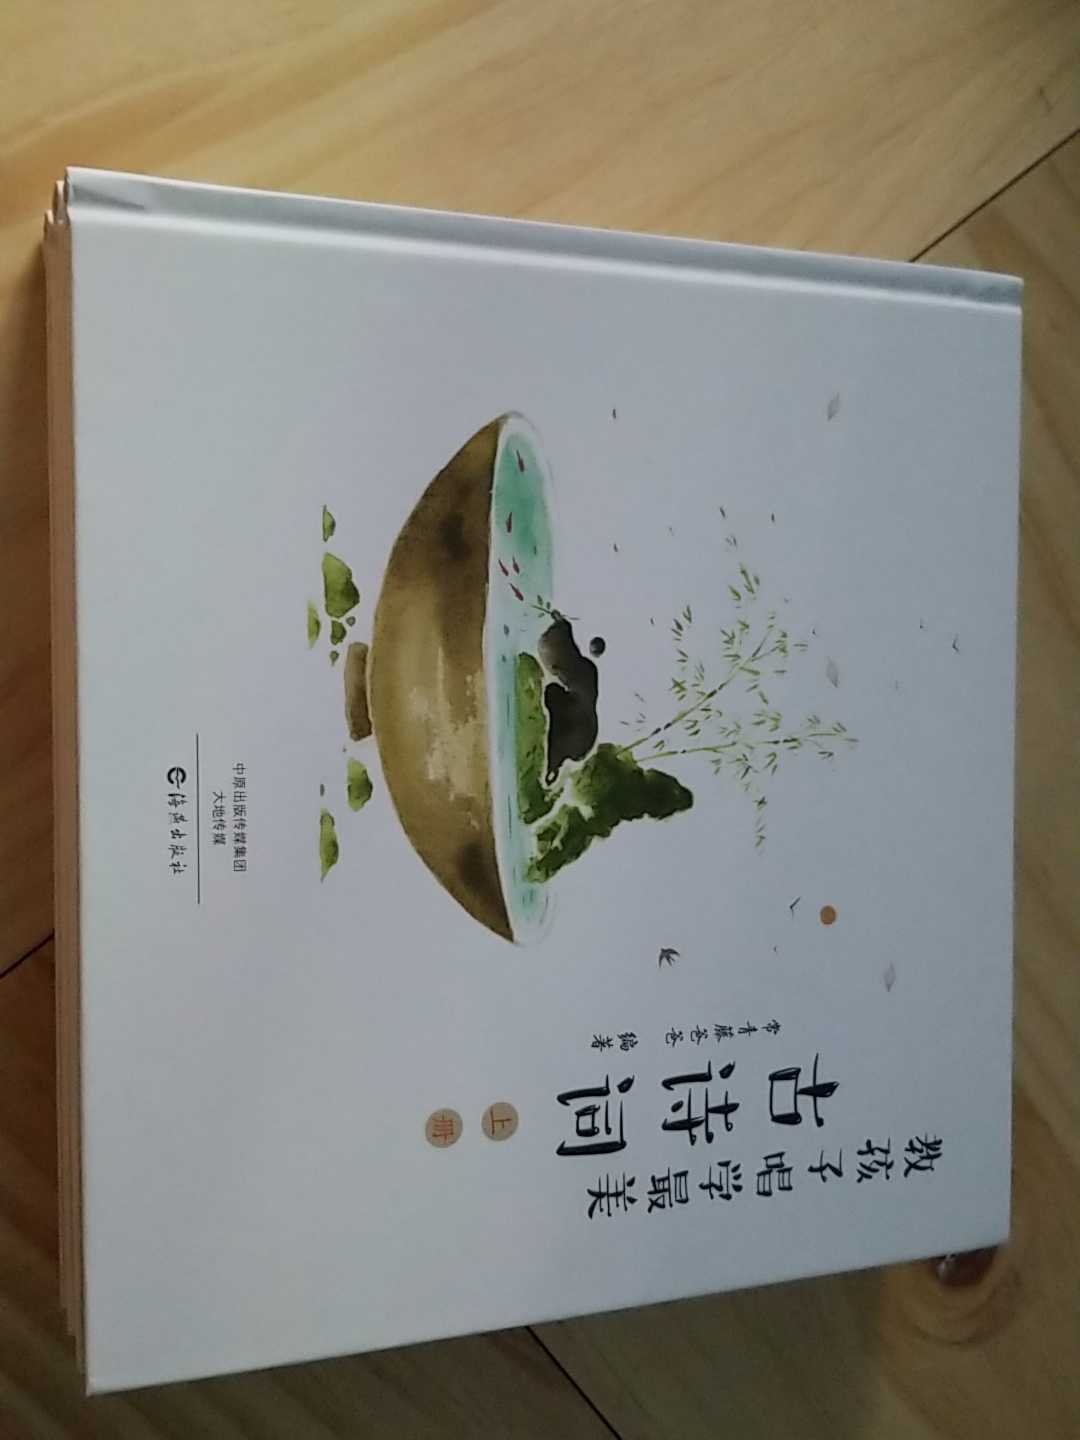 这套书太美了，中国古诗词里的神韵随着书里的字和音频仿佛要流出来了。大开本也方便阅读和放在阅读架上。满意满意。